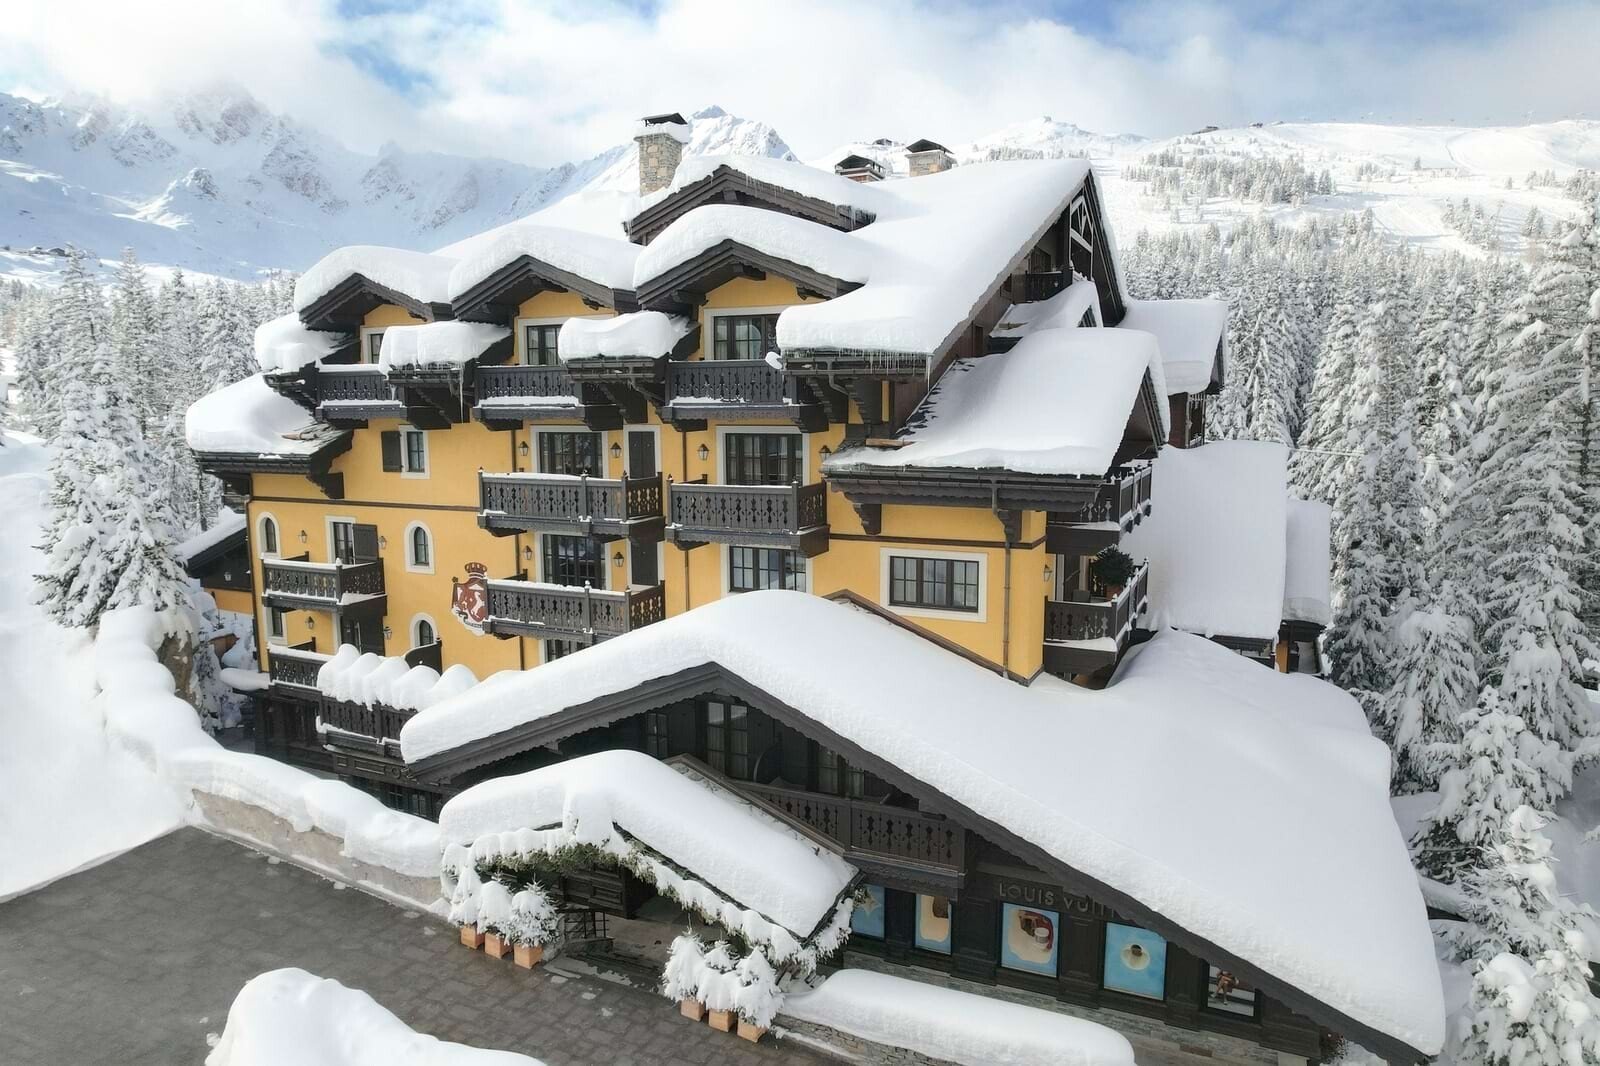 Cheval Blanc, 5 Star Luxury Ski Hotel in Courchevel 1850